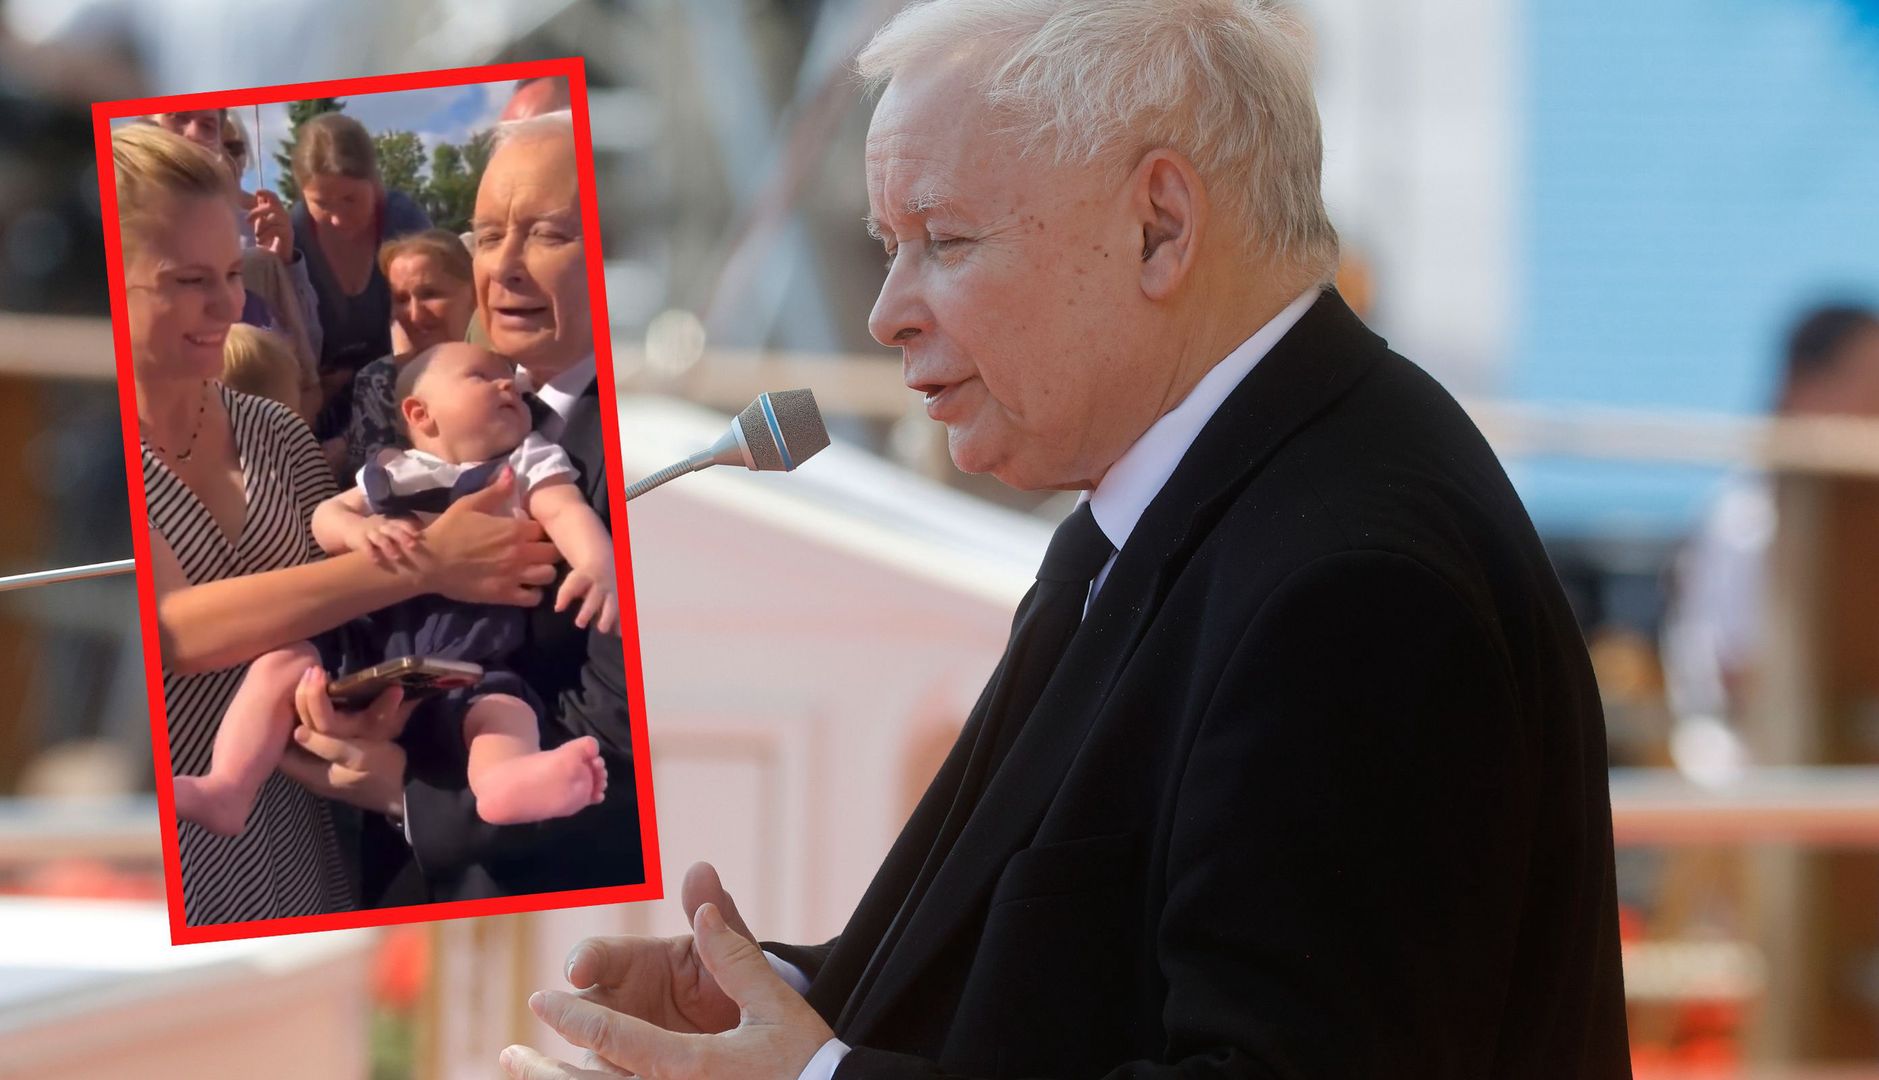 Wideo z Kaczyńskim obiega sieć. Dała mu dziecko